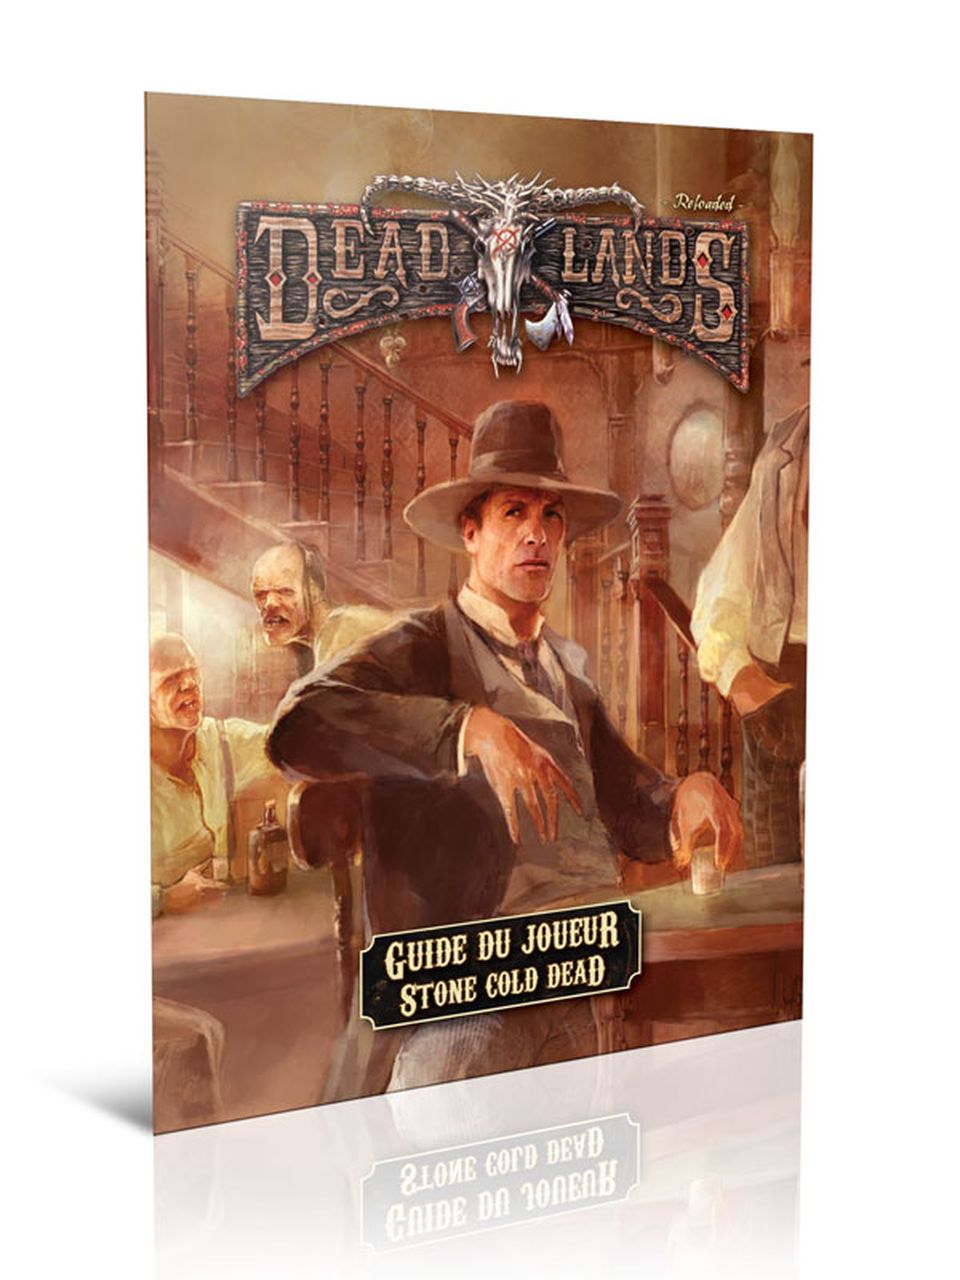 Deadlands Reloaded - Guide du joueur de Stone Cold Dead image